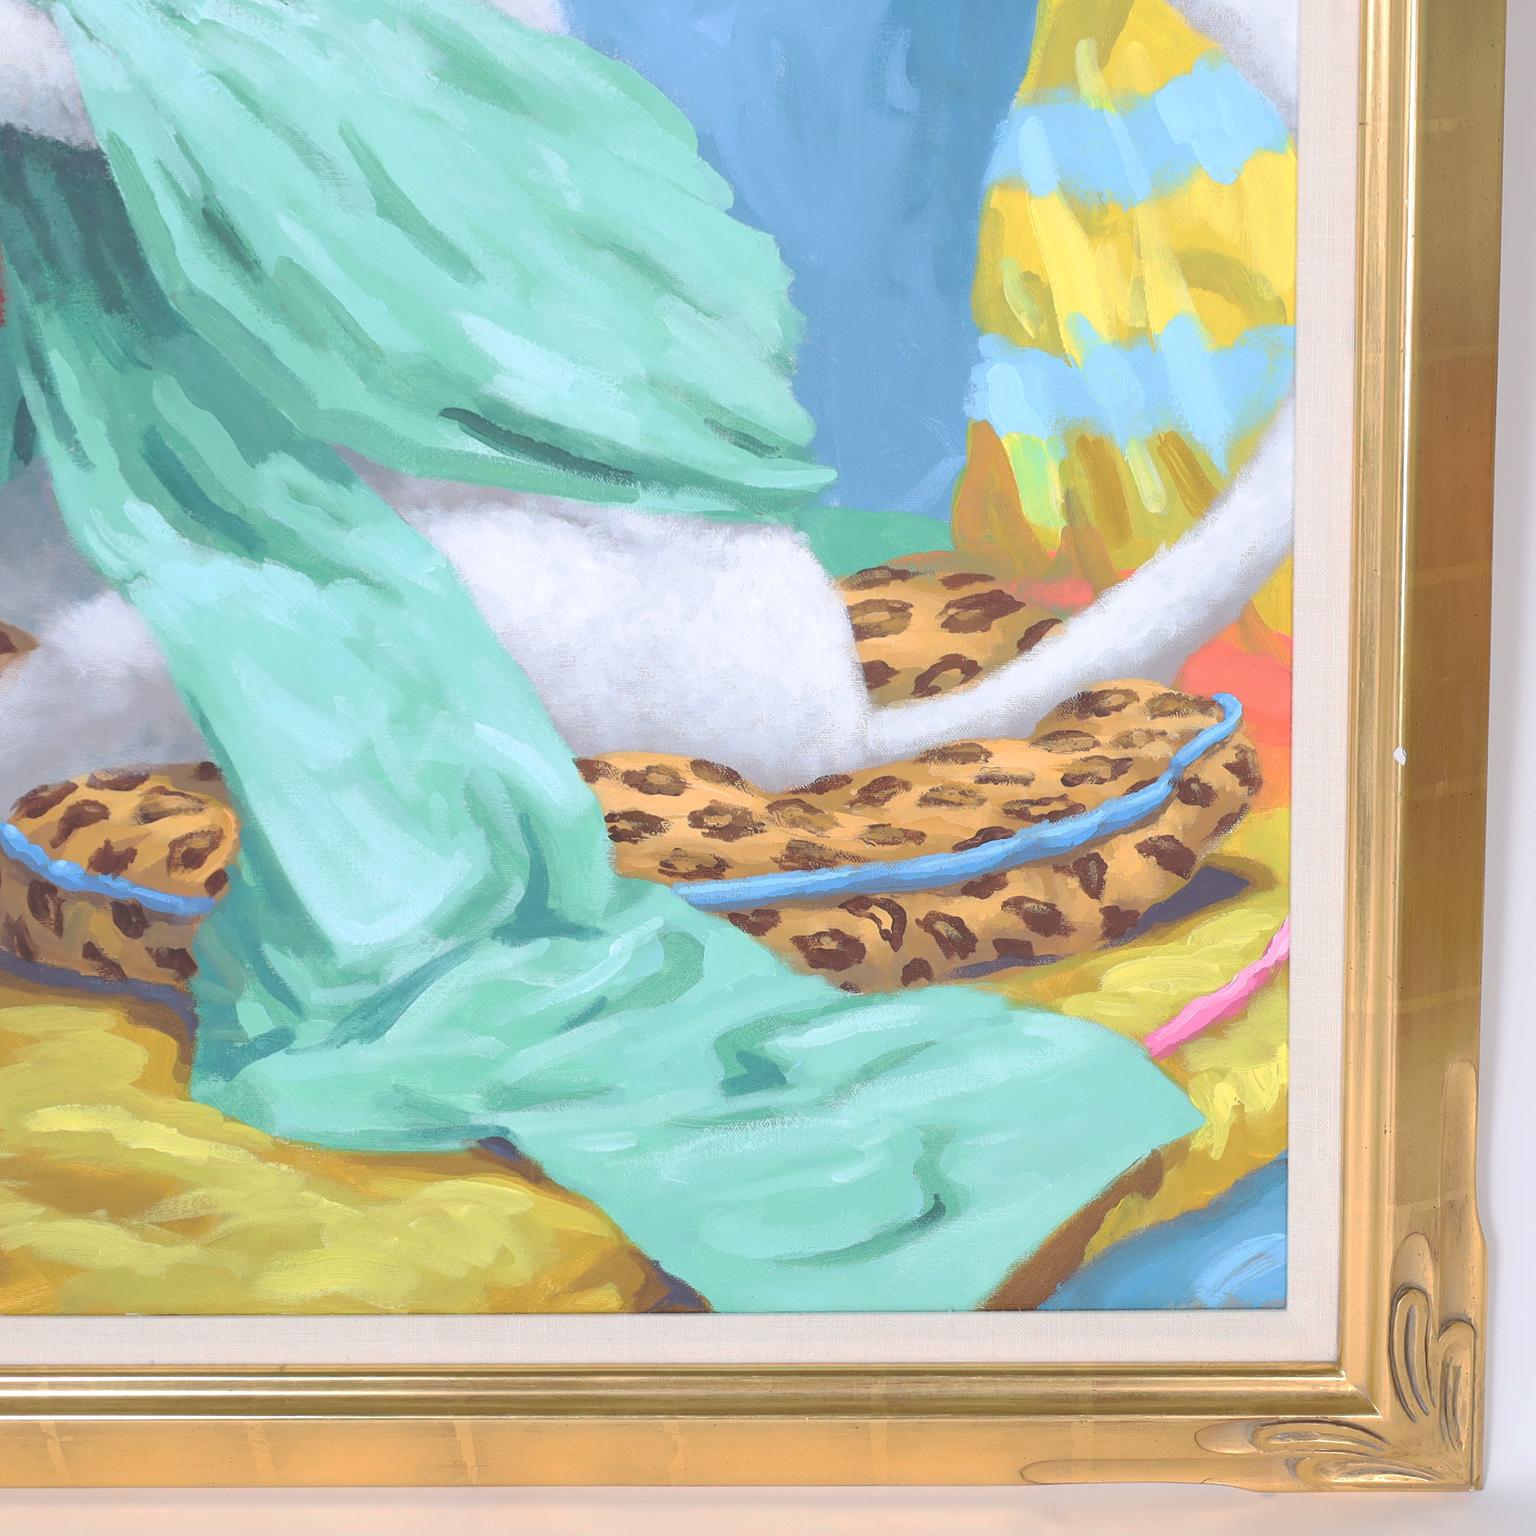 Peintures acryliques fantaisistes sur toile, l'une représentant un singe épluchant une banane et l'autre un singe tenant un soda glacé. Les deux portent des chapeaux de style asiatique et se prélassent sur des coussins à motifs léopard. Présenté